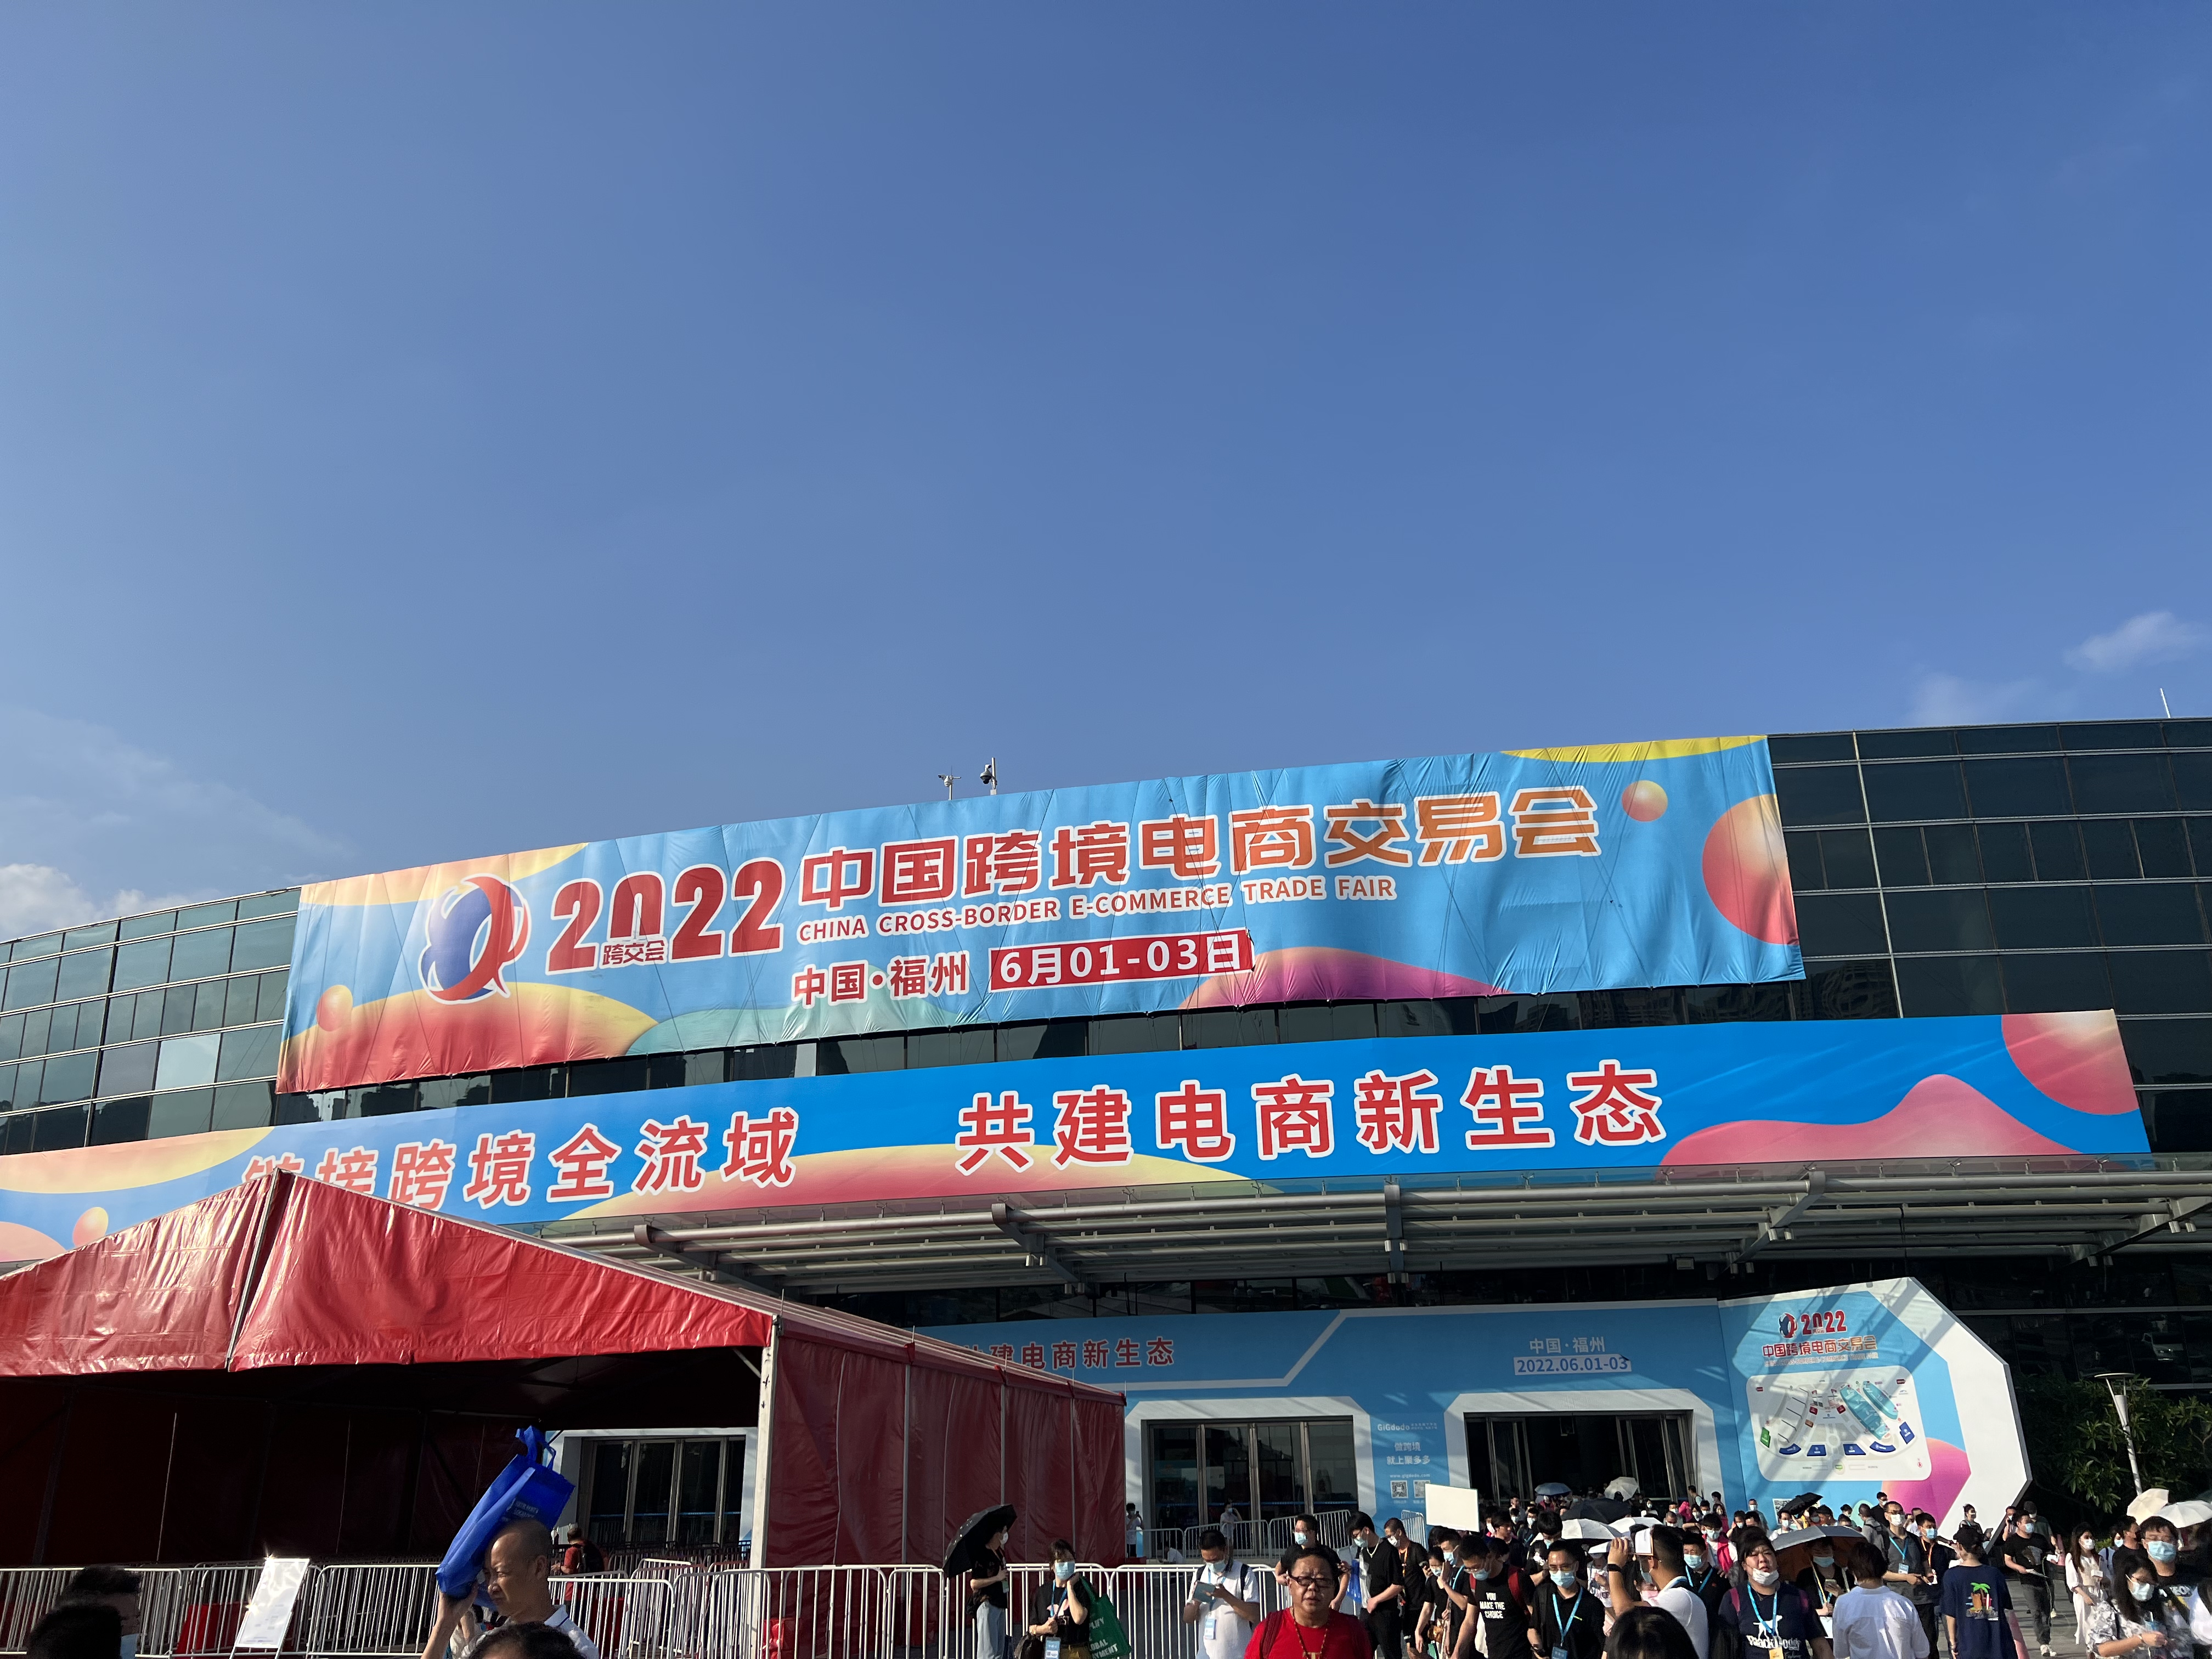 نمایشگاه تجارت الکترونیک فرامرزی چین